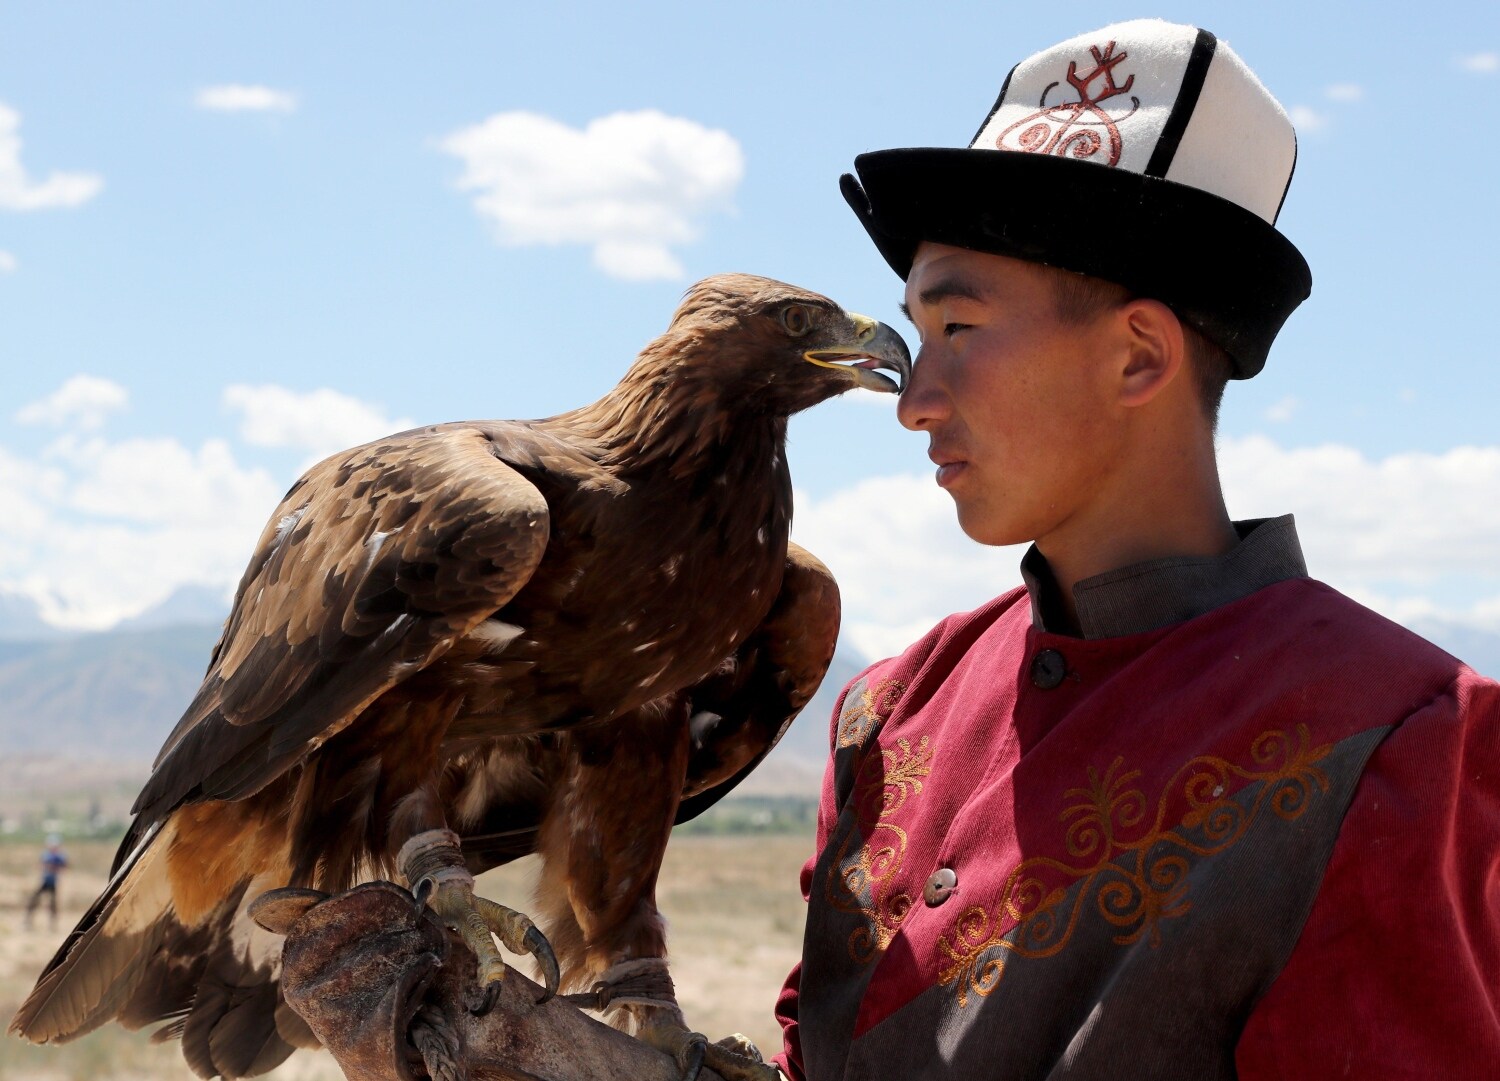 Un kirguiso berkutchi (cazador de águilas) en un etnofestival tradicional en el pueblo de Ton, cerca del lago Issyk-Kul, Kirguistán